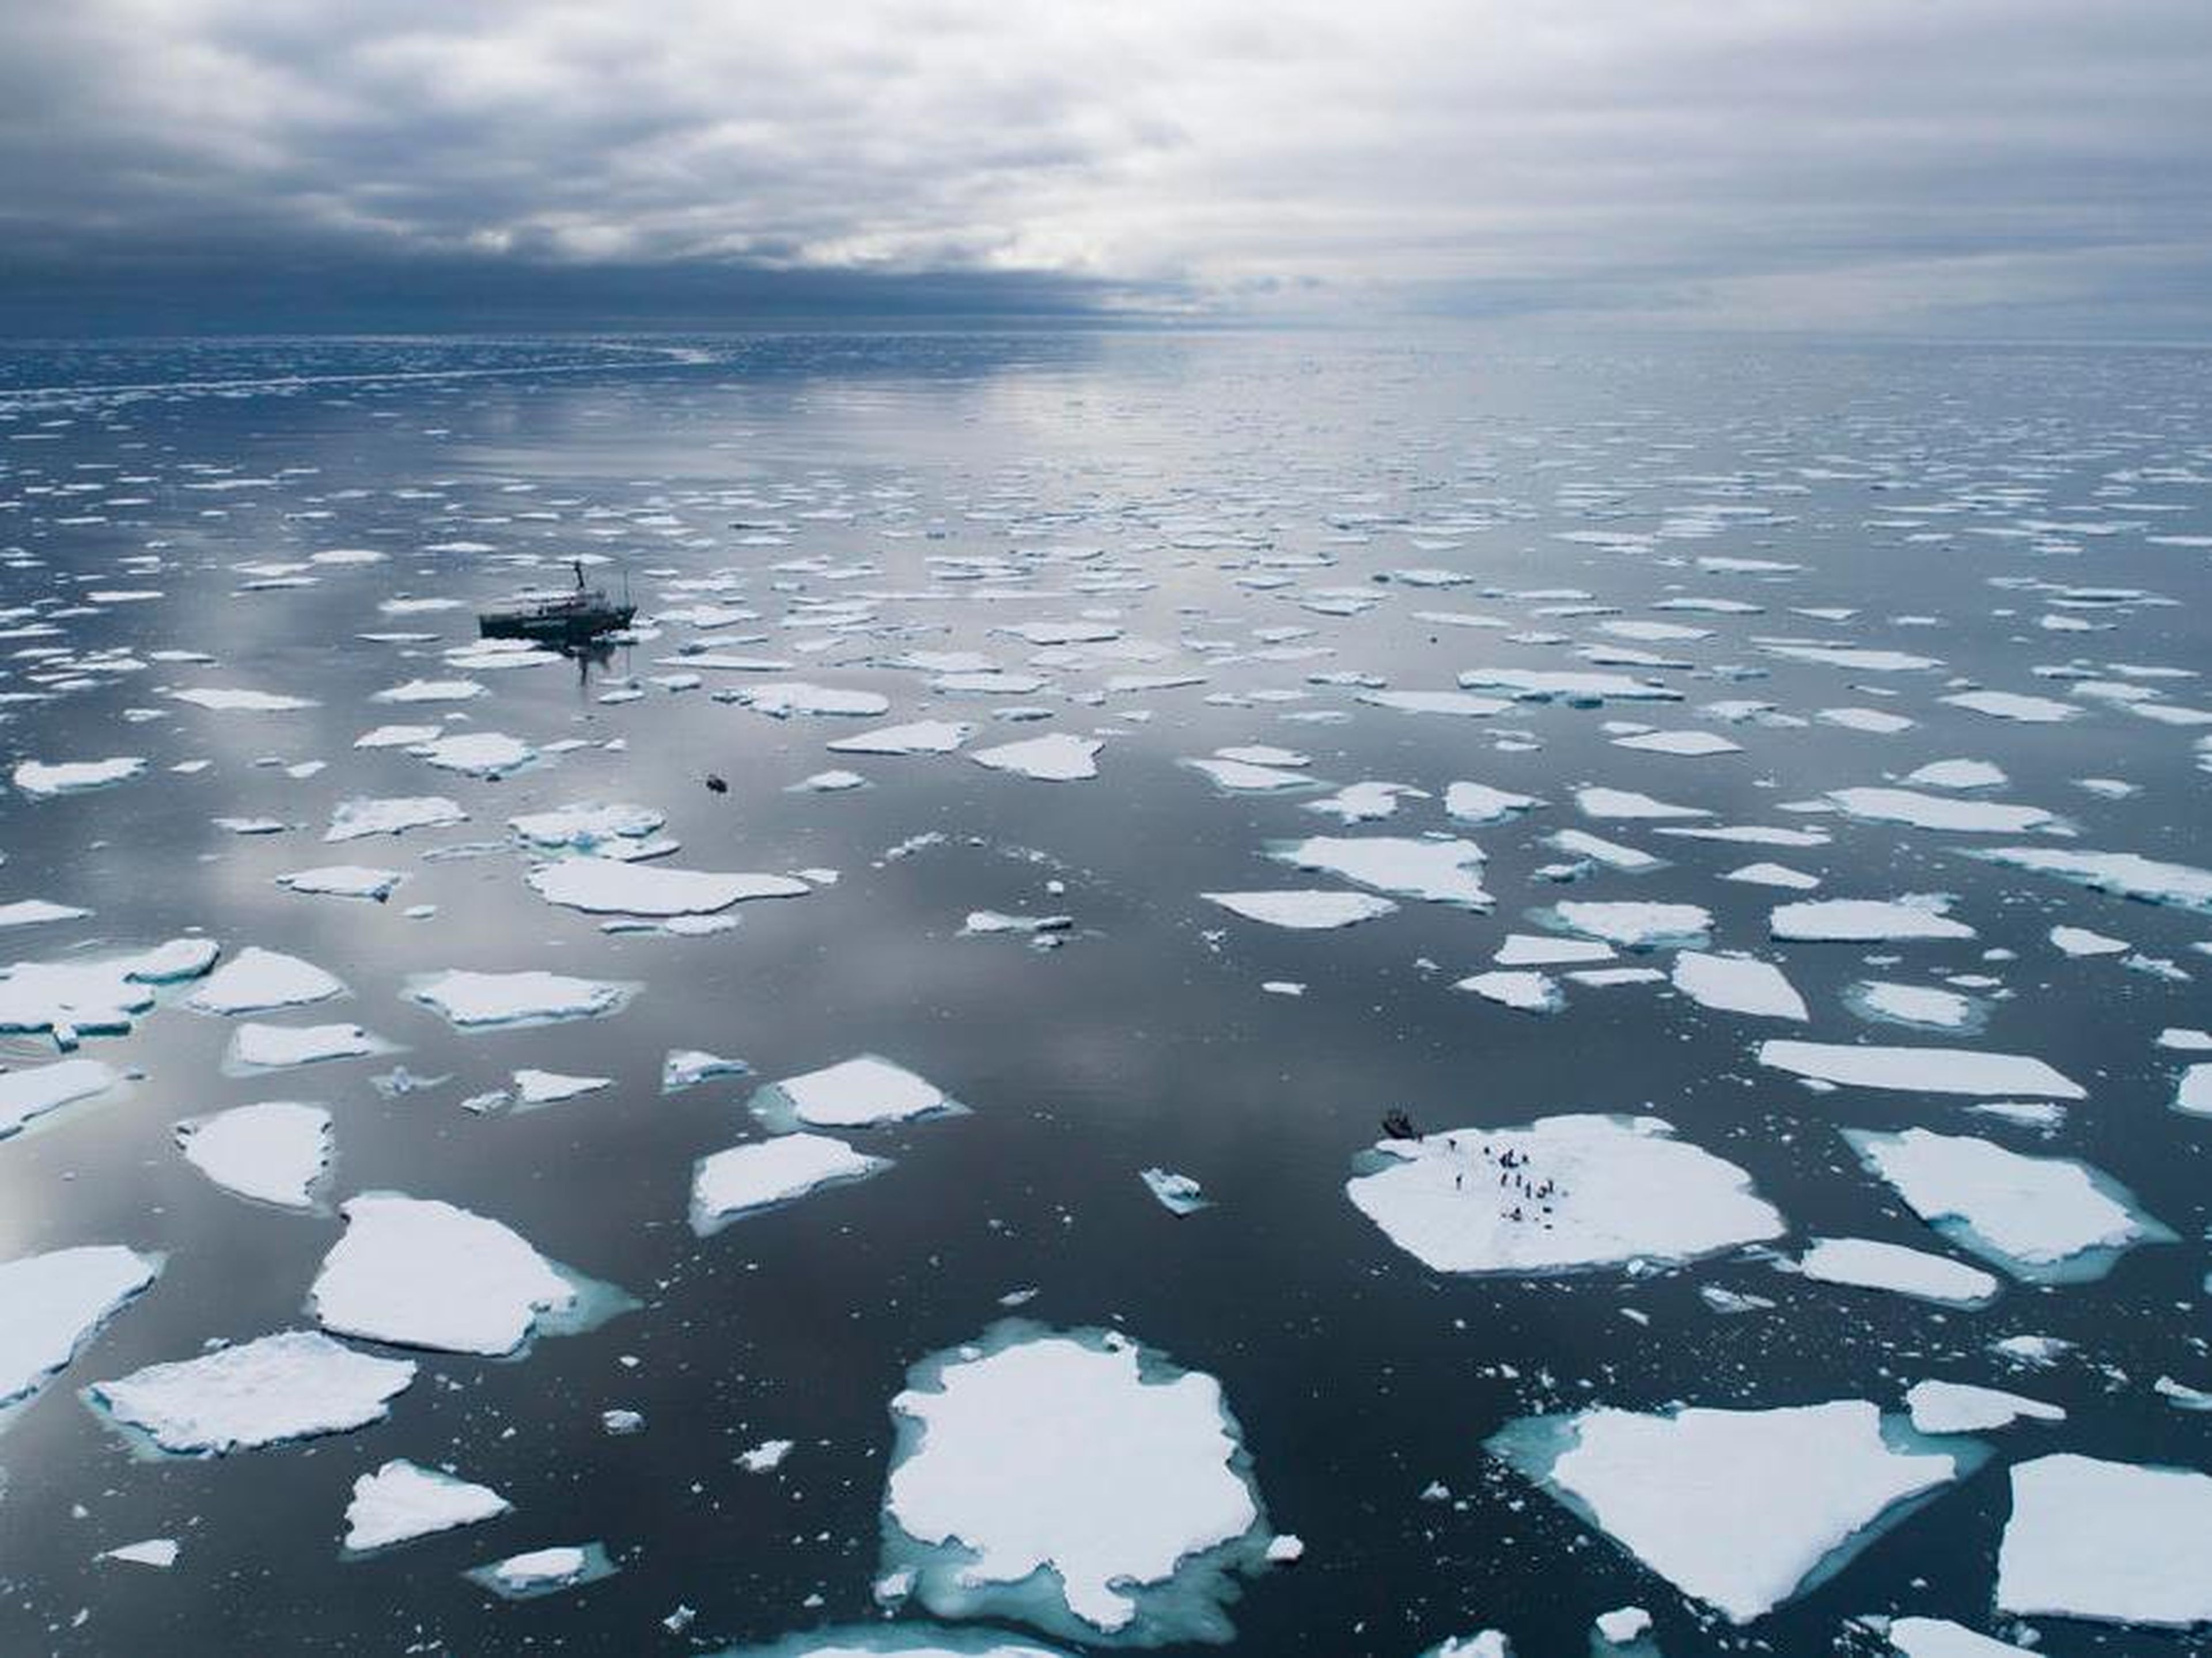 El barco Arctic Sunrise rodeado de bloques de hielo en el océano cerca de Svalbard, Noruega.